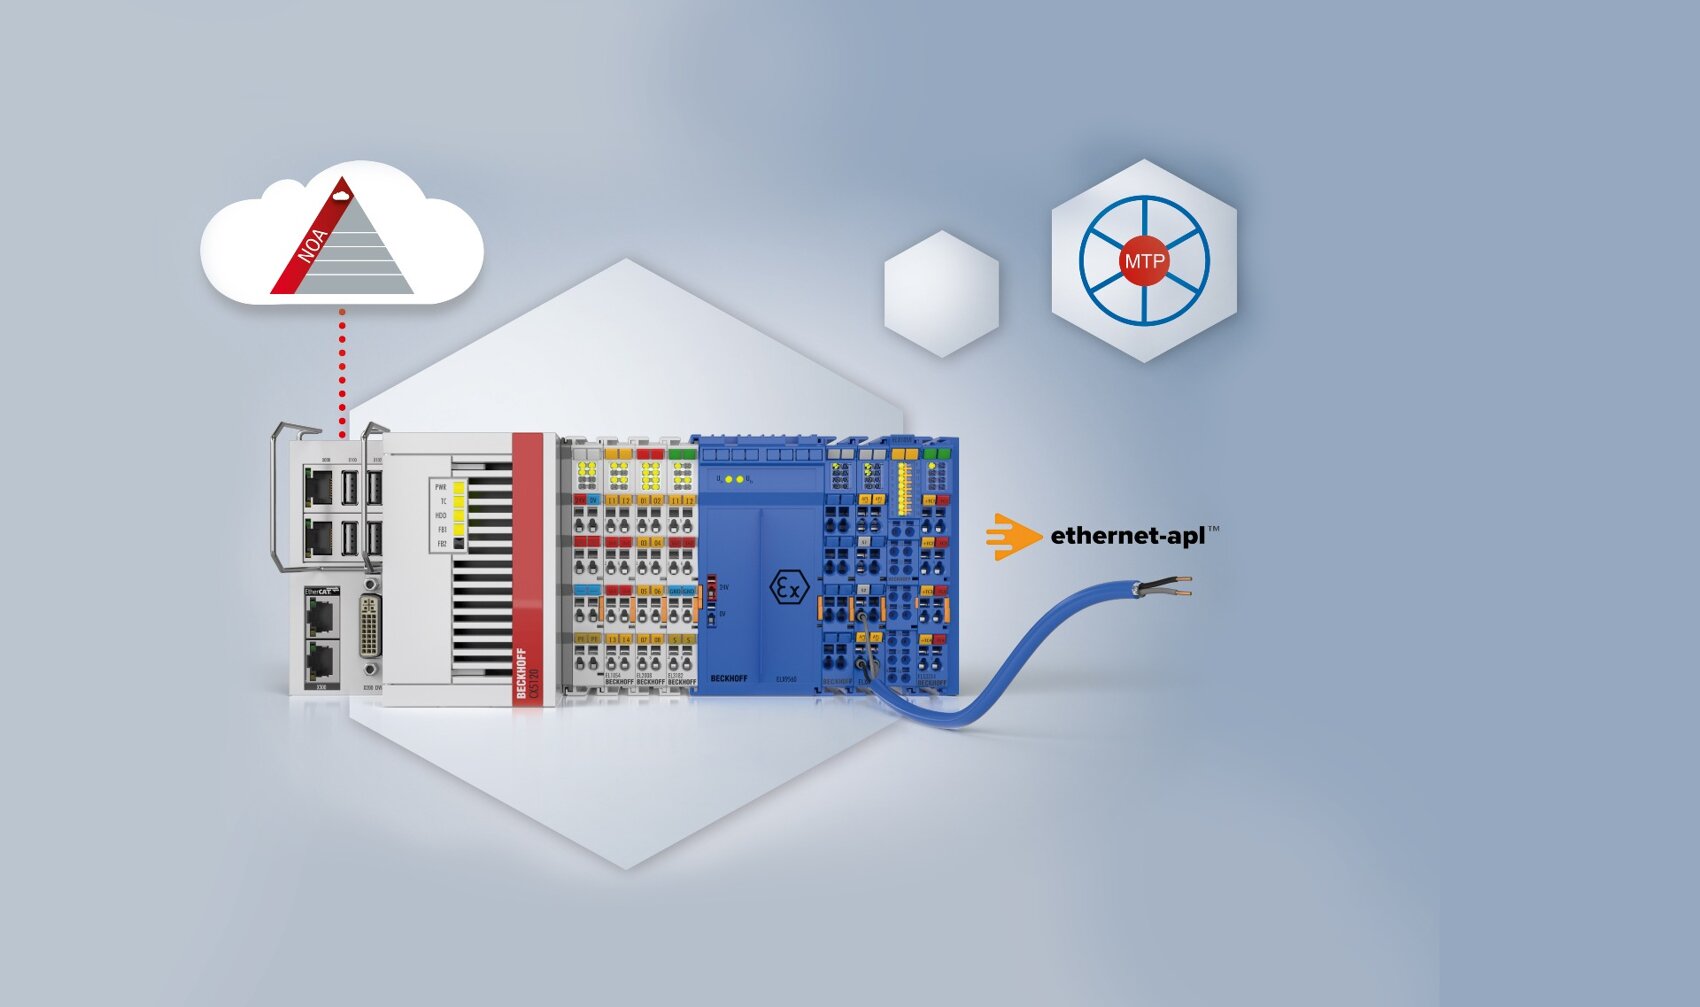 Anlagenautomatisierung mit NOA, Ethernet-APL und MTP